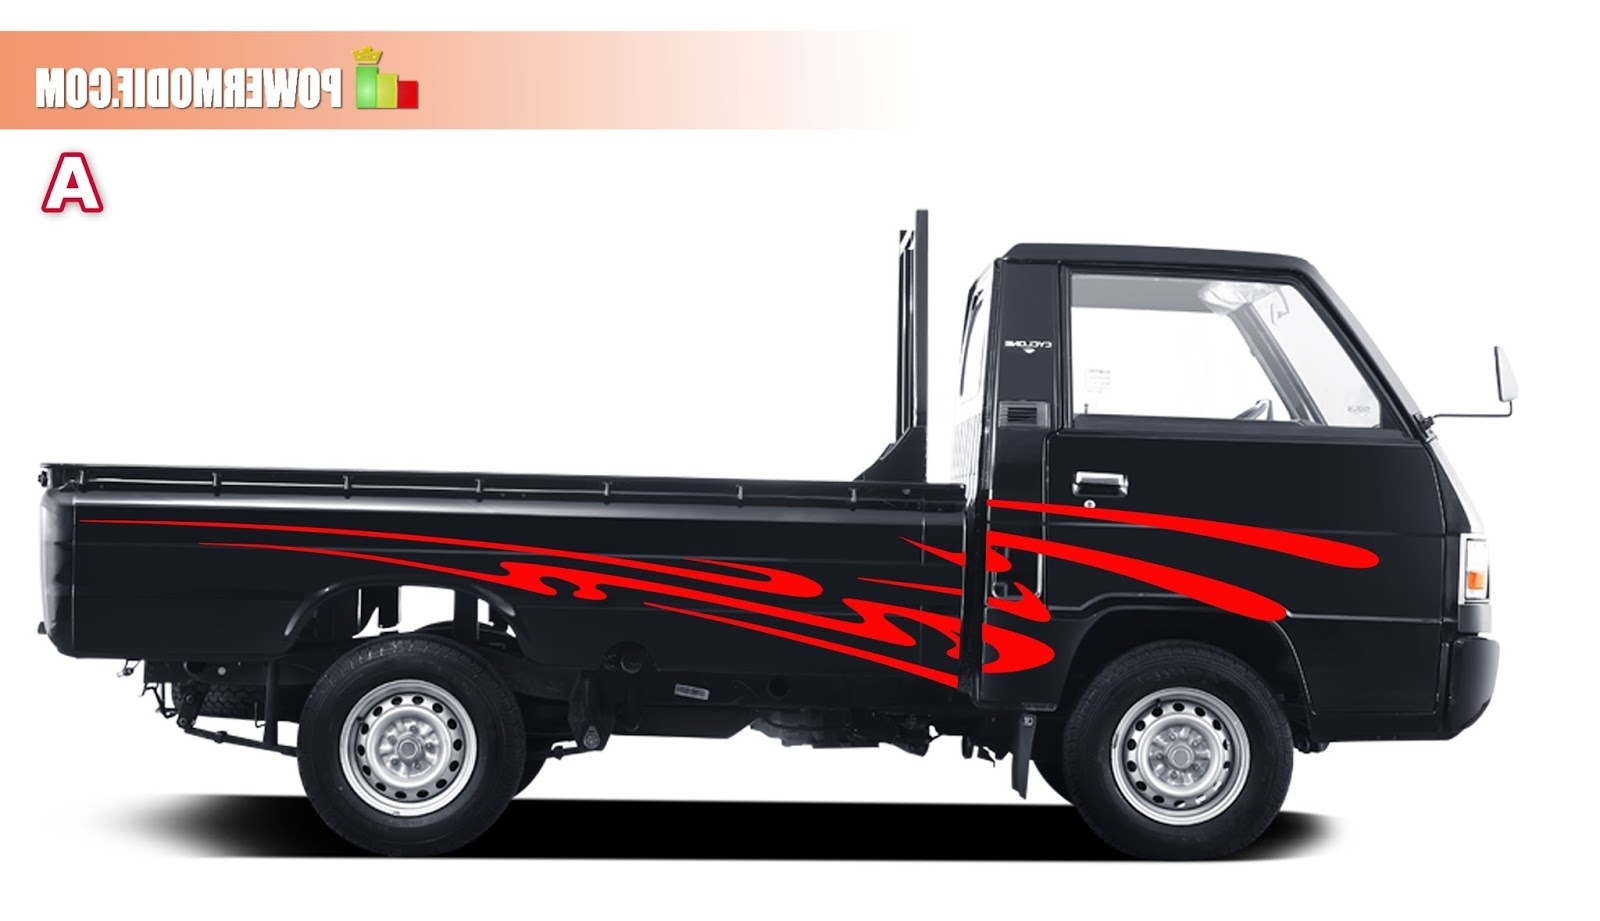 Gambar Desain Modifikasi Mobil L300 Pick Up Mobiliobaru